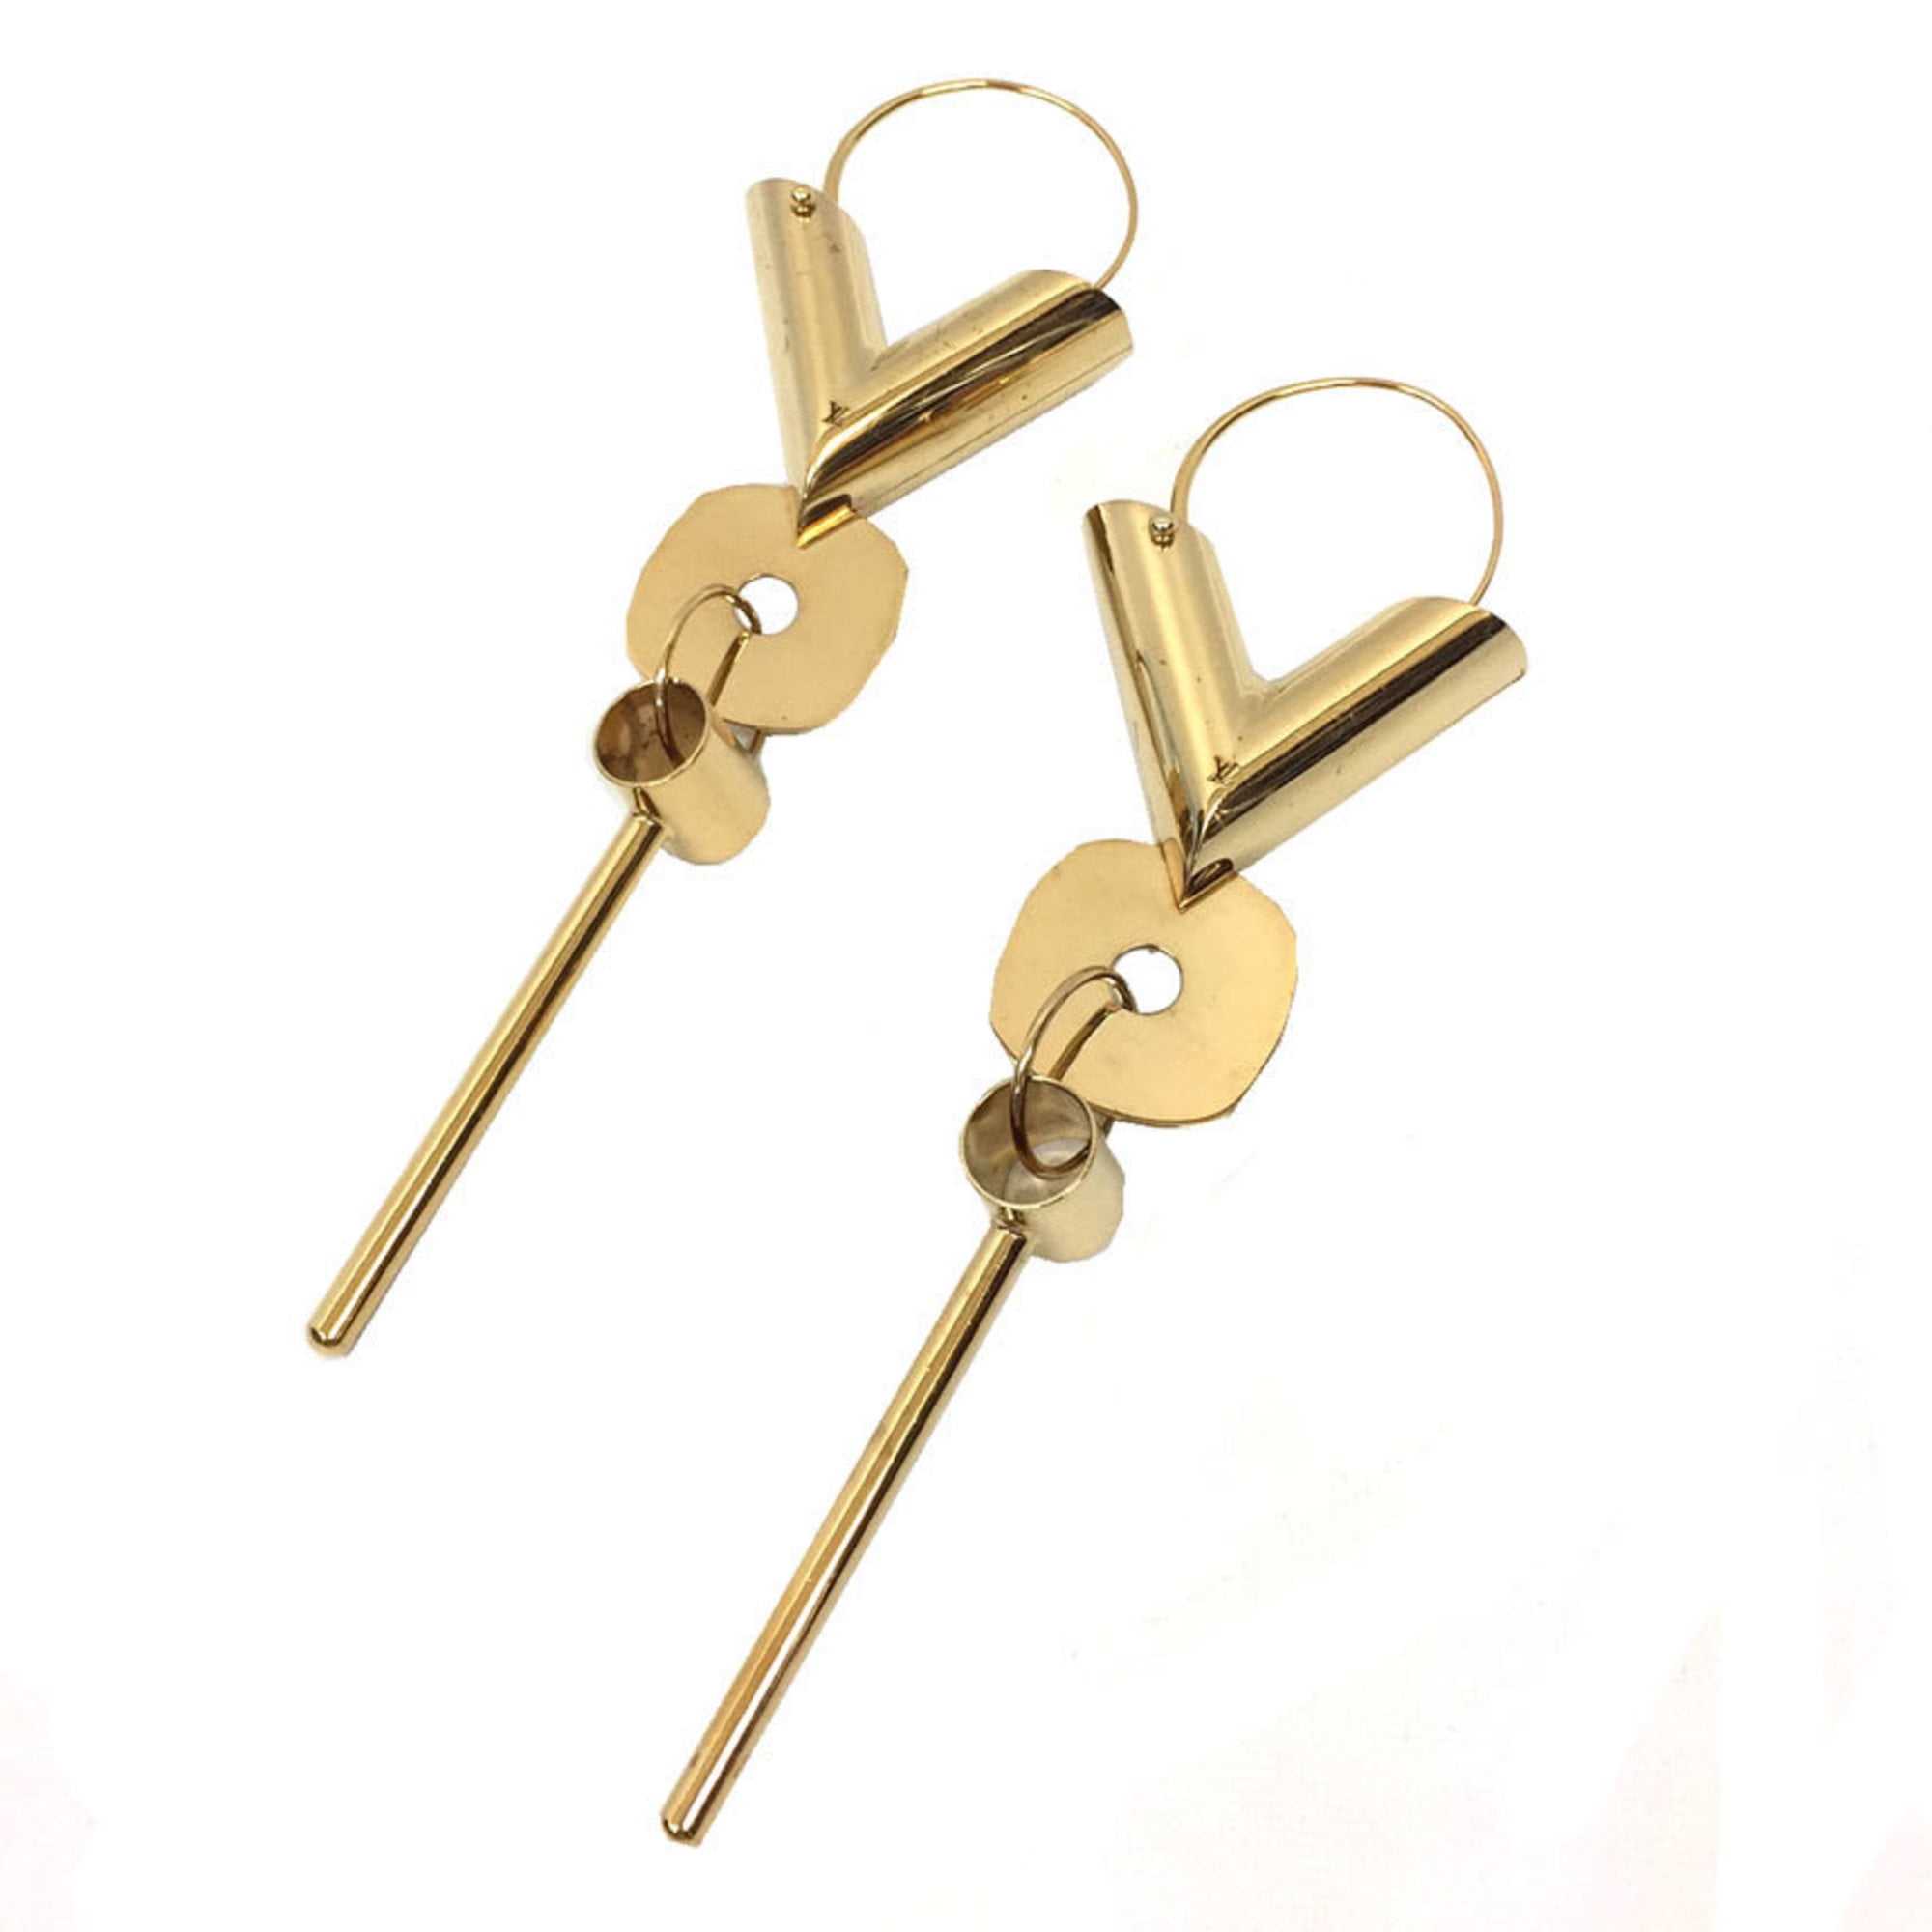 V STRASS Hoop Earrings by Louis Vuitton #earrings #goldearrings  #louisvuitton #louisvuittonearrings #jewelperspect…